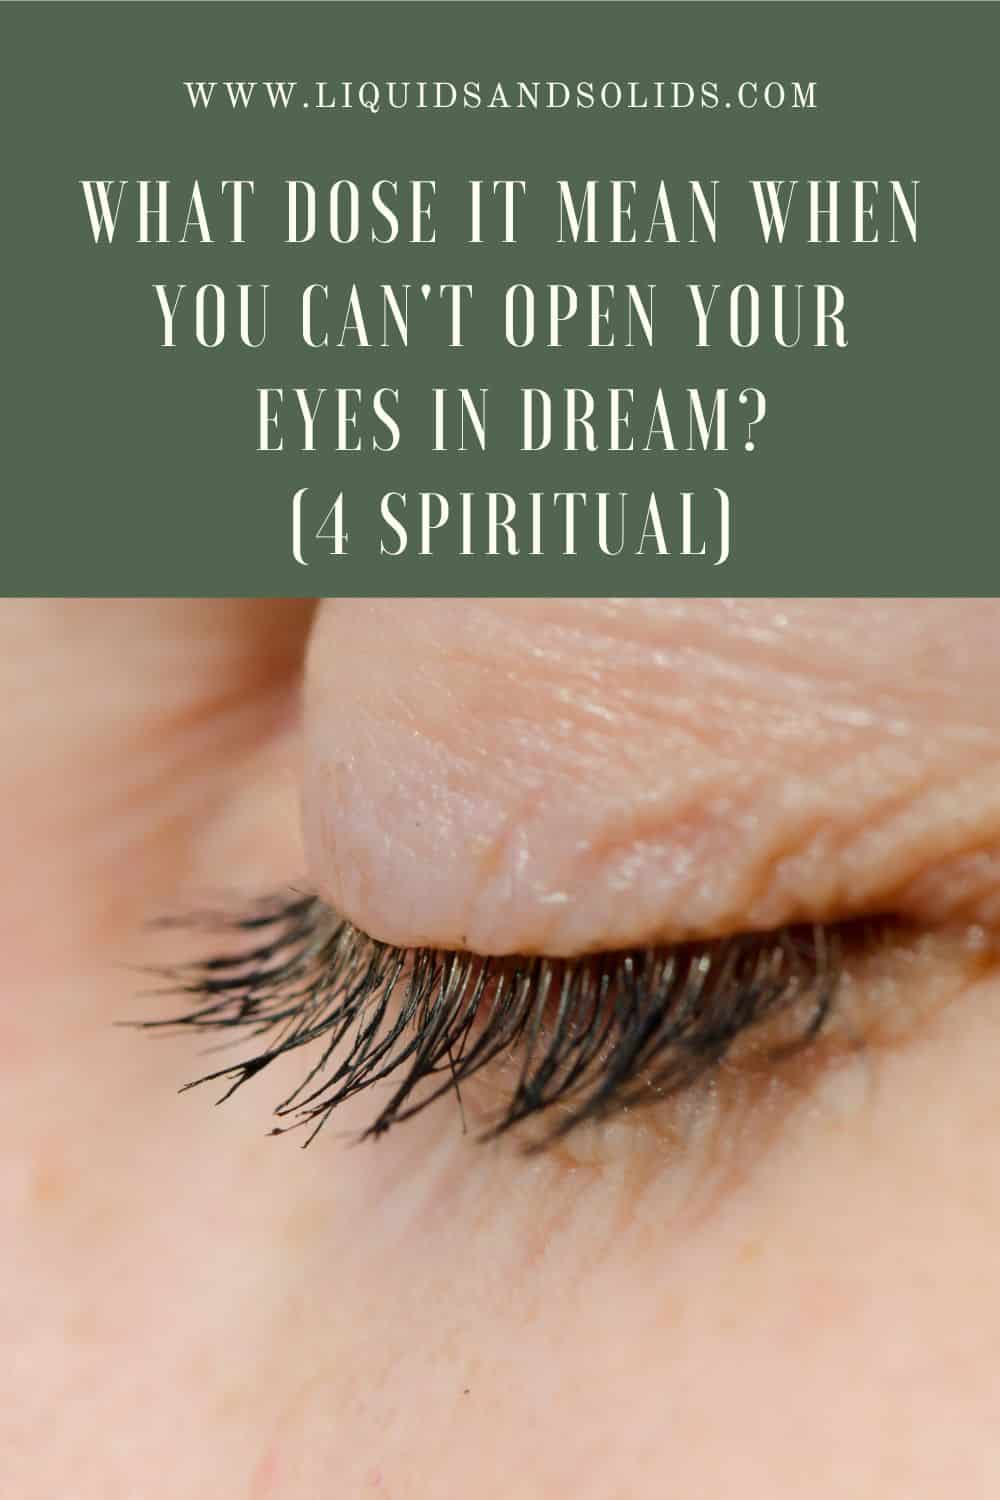  Impossible d'ouvrir les yeux en rêve (4 significations spirituelles)